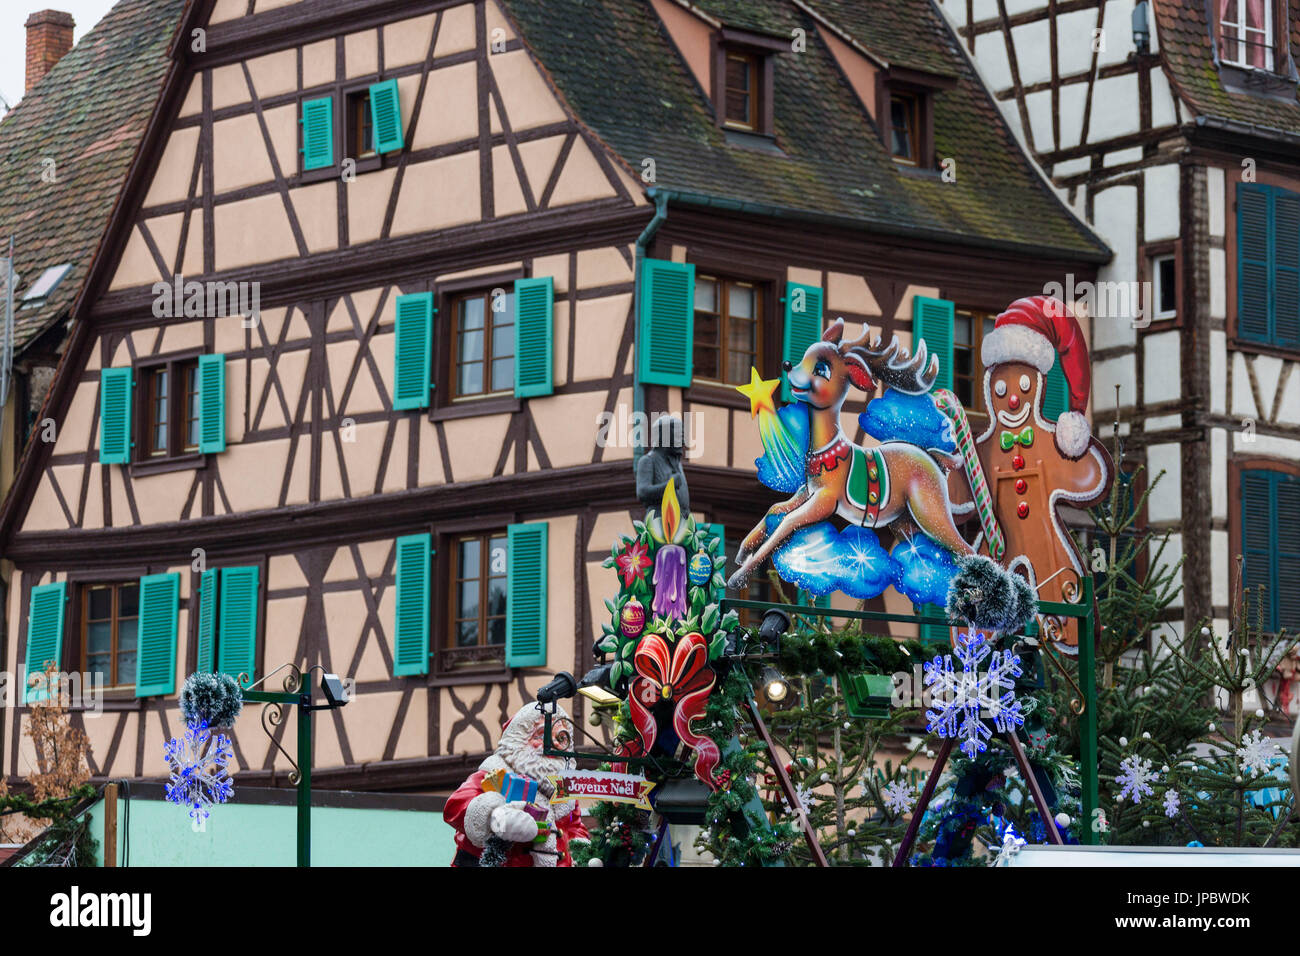 Weihnachtsschmuck umrahmen die typischen Häuser der mittelalterlichen alten Stadt Colmar, Haut-Rhin Abteilung Elsass Frankreich Europa Stockfoto